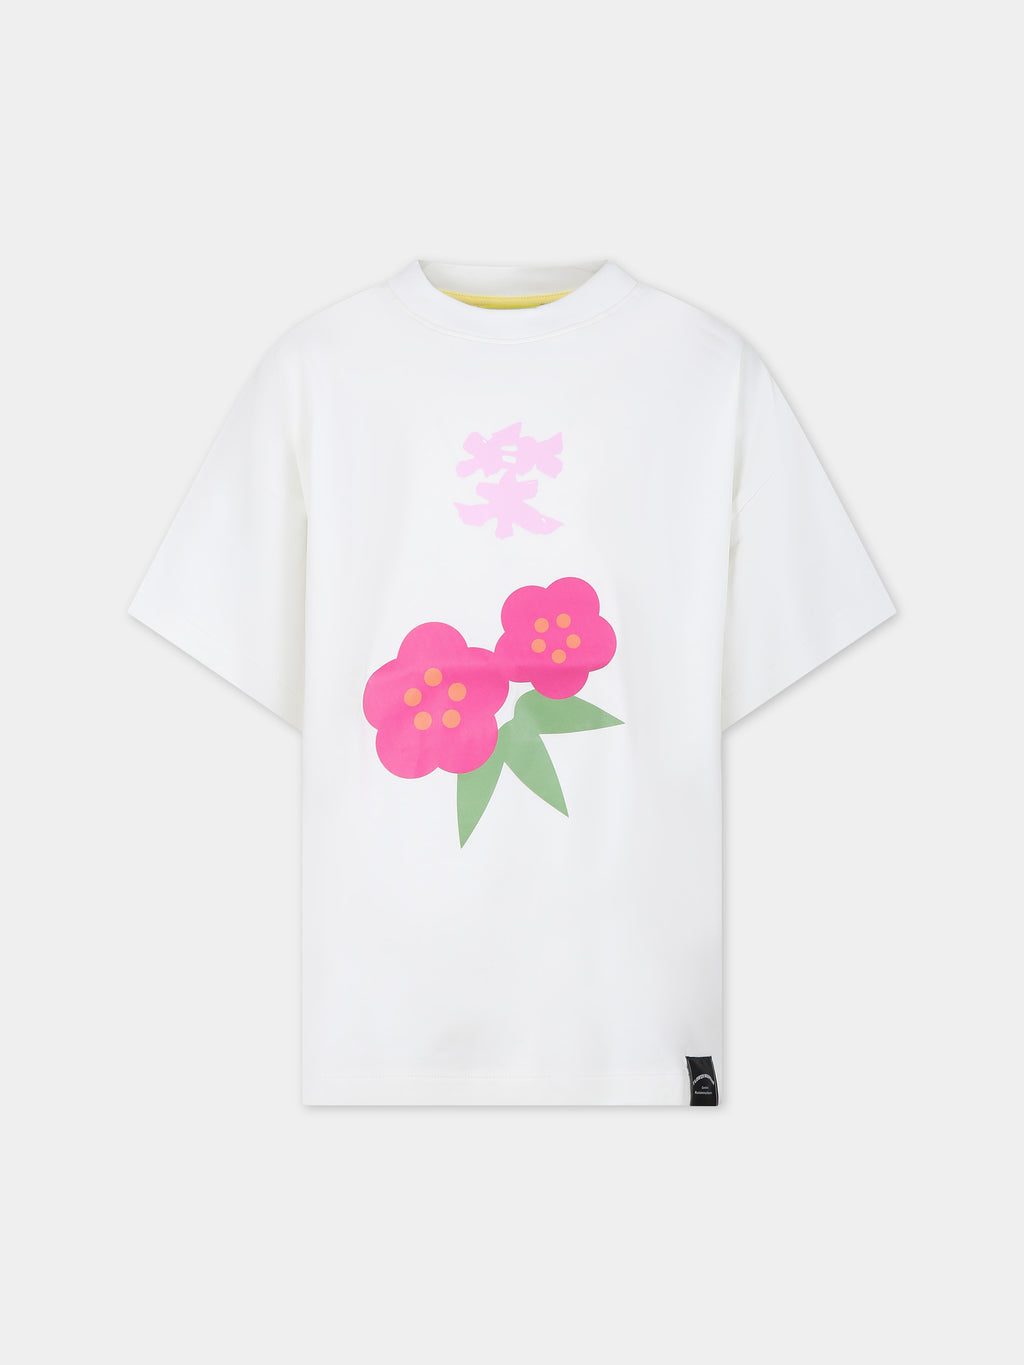 T-shirt blanc pour fille avec des fleurs